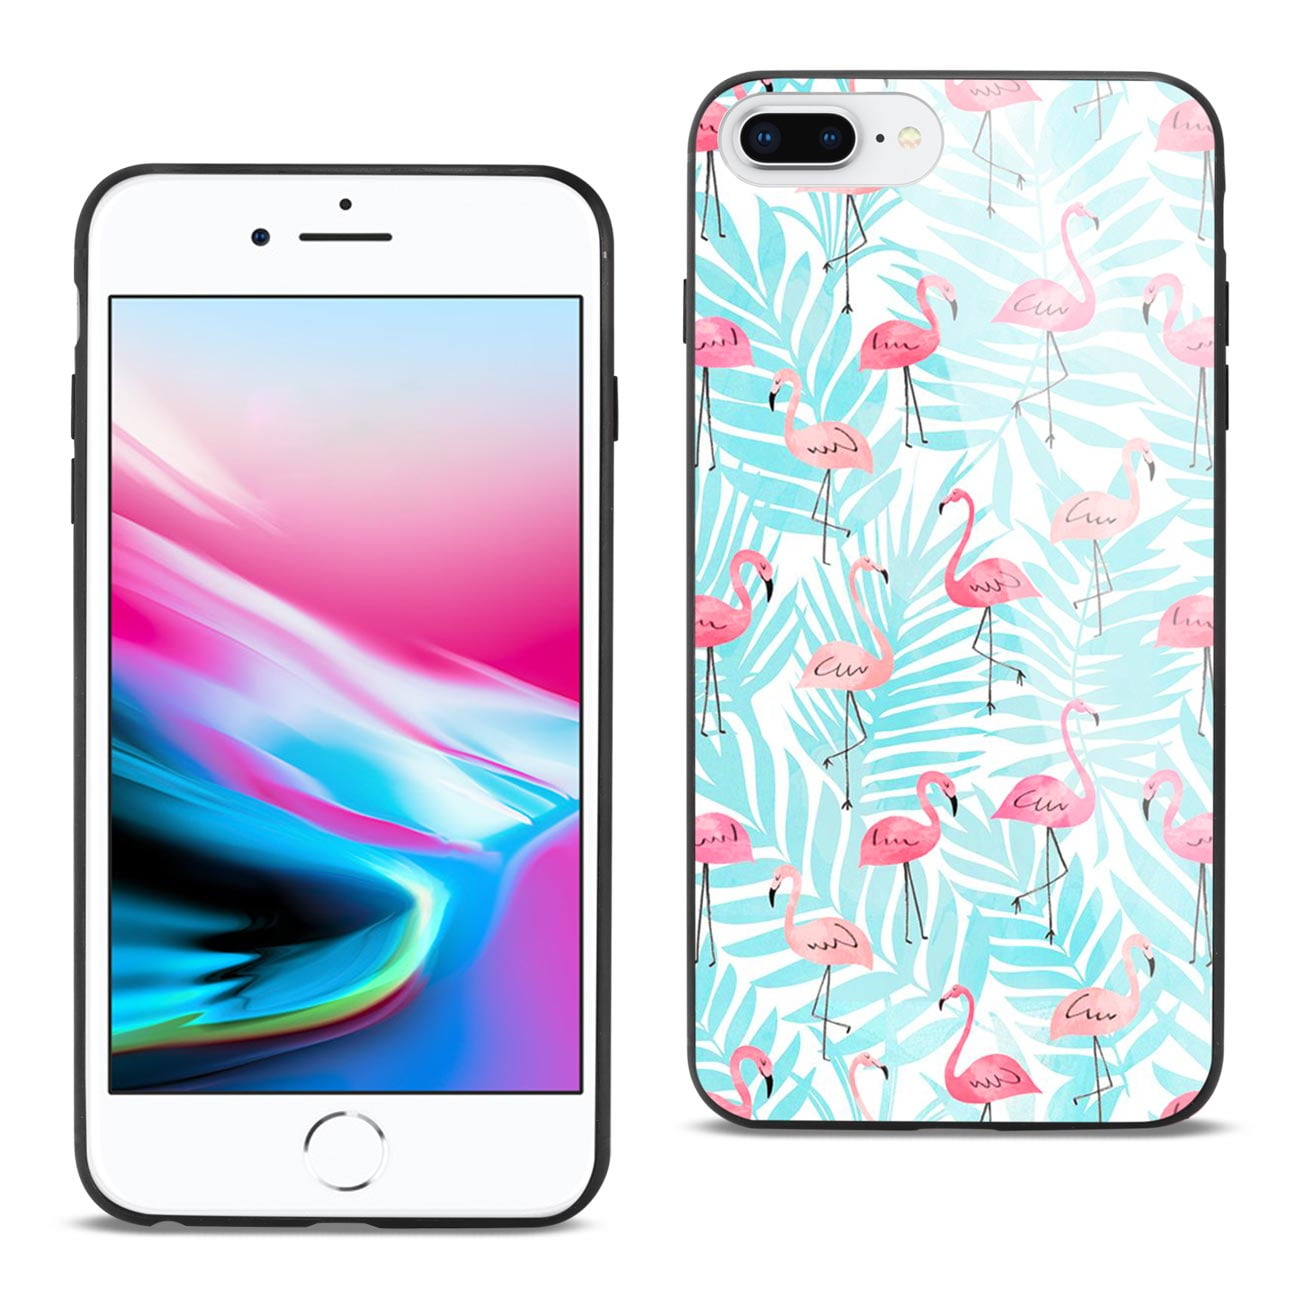 Iphone 8 Plus Hard Glass Design Tpu Case